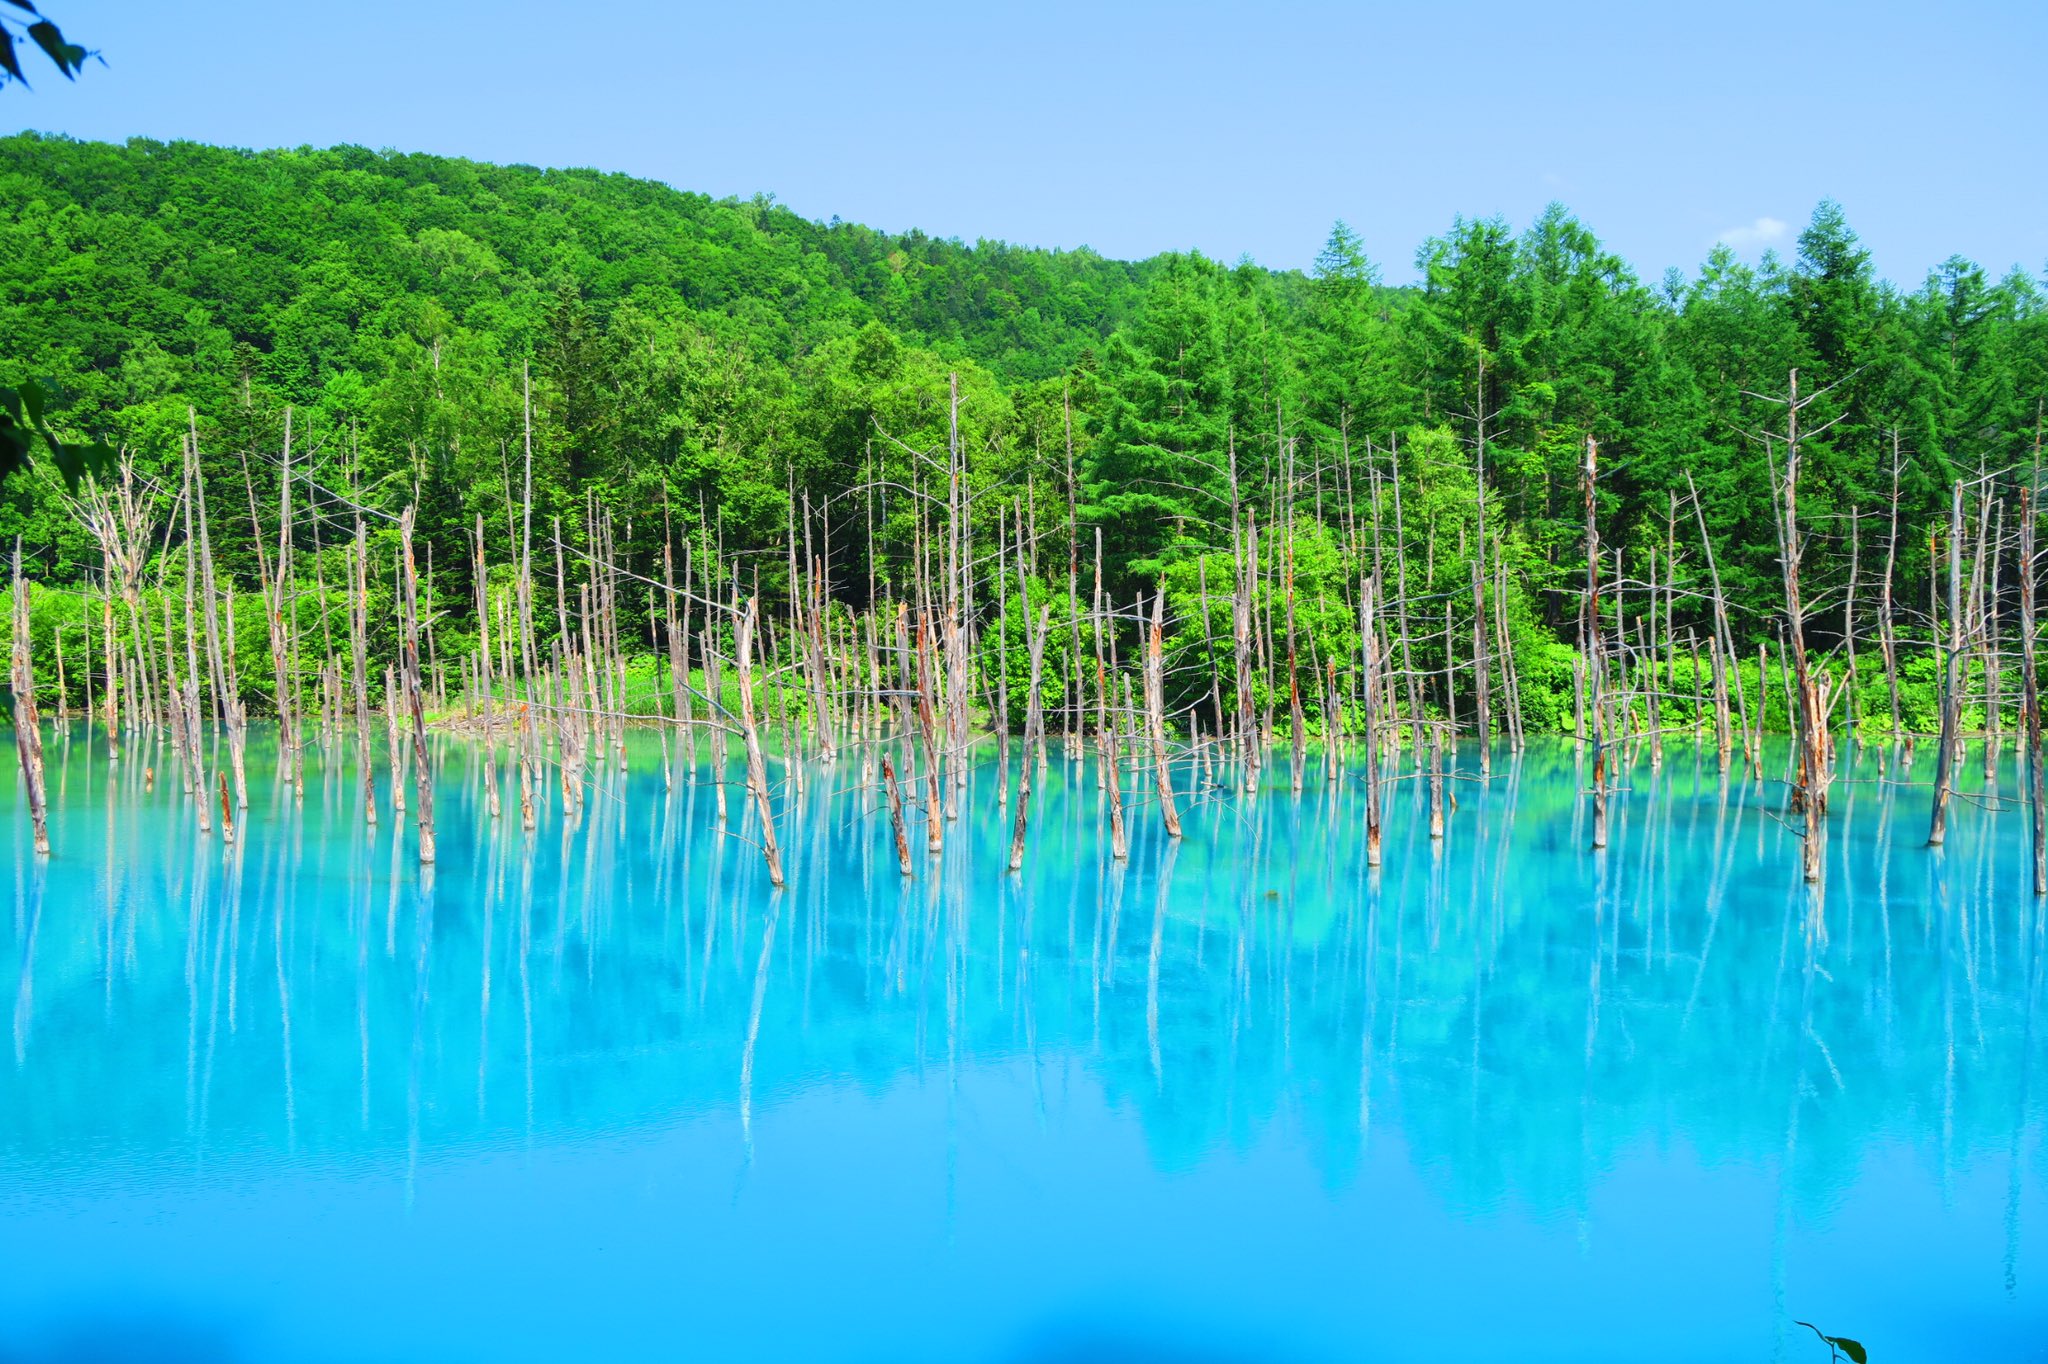 どあのぶ 北海道 青い池 ダム工事の影響で偶然できた水たまりだそうです Apple社のiphoneなどの壁紙に採用されるほどの絶景でエイジブルーと呼ばれる鮮やかな青が綺麗なので是非行ってみて欲しいです 写真のような青の池が広がっていますよ 北海道